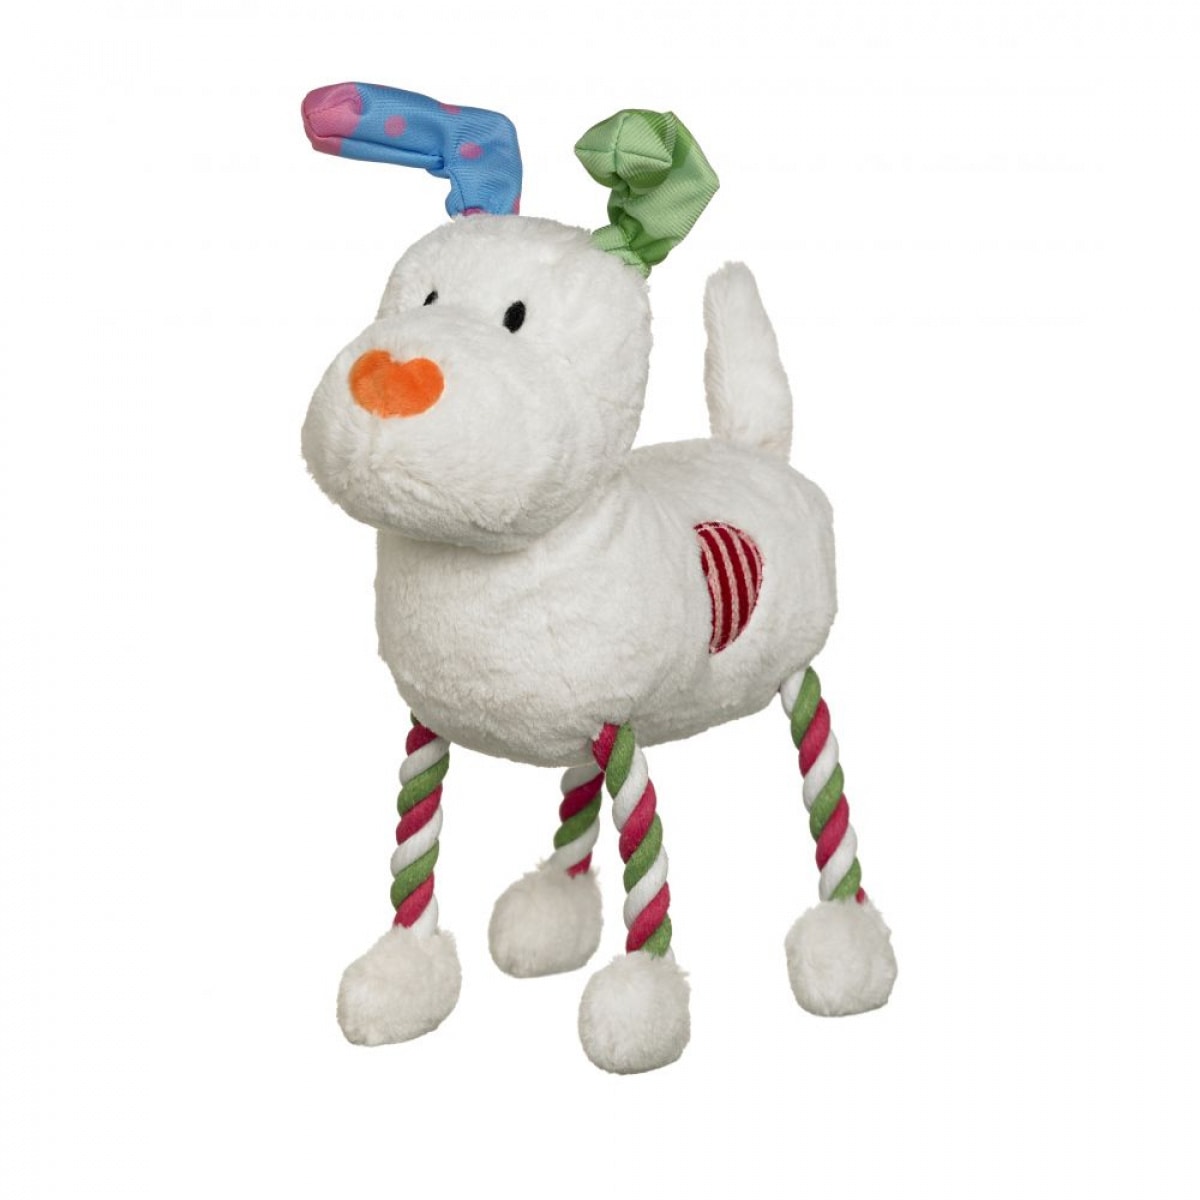 Snowman Hug Tug Plush Toy Product Image